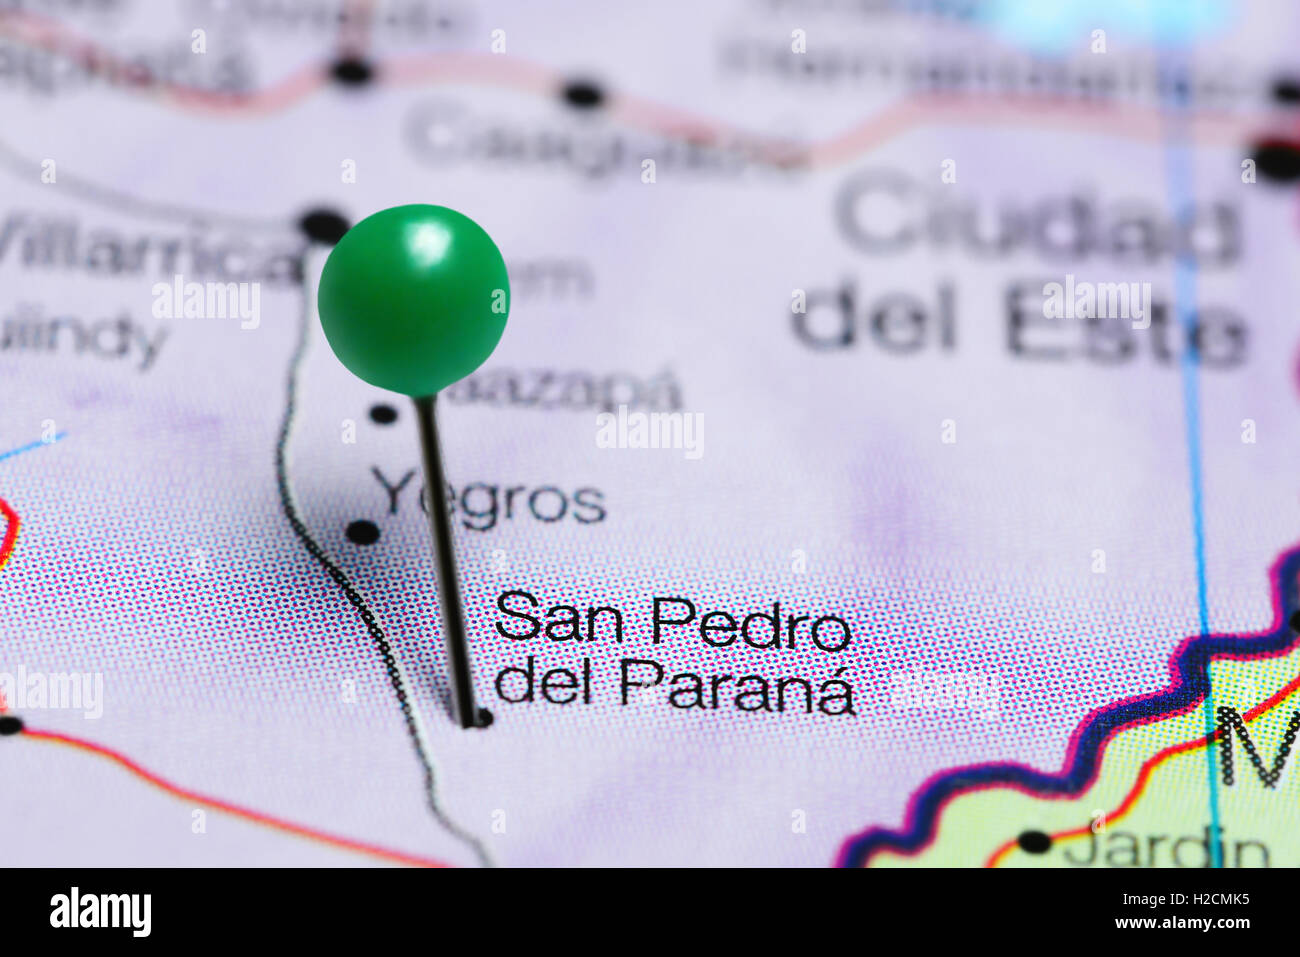 San Pedro del Parana épinglée sur une carte du Paraguay Banque D'Images